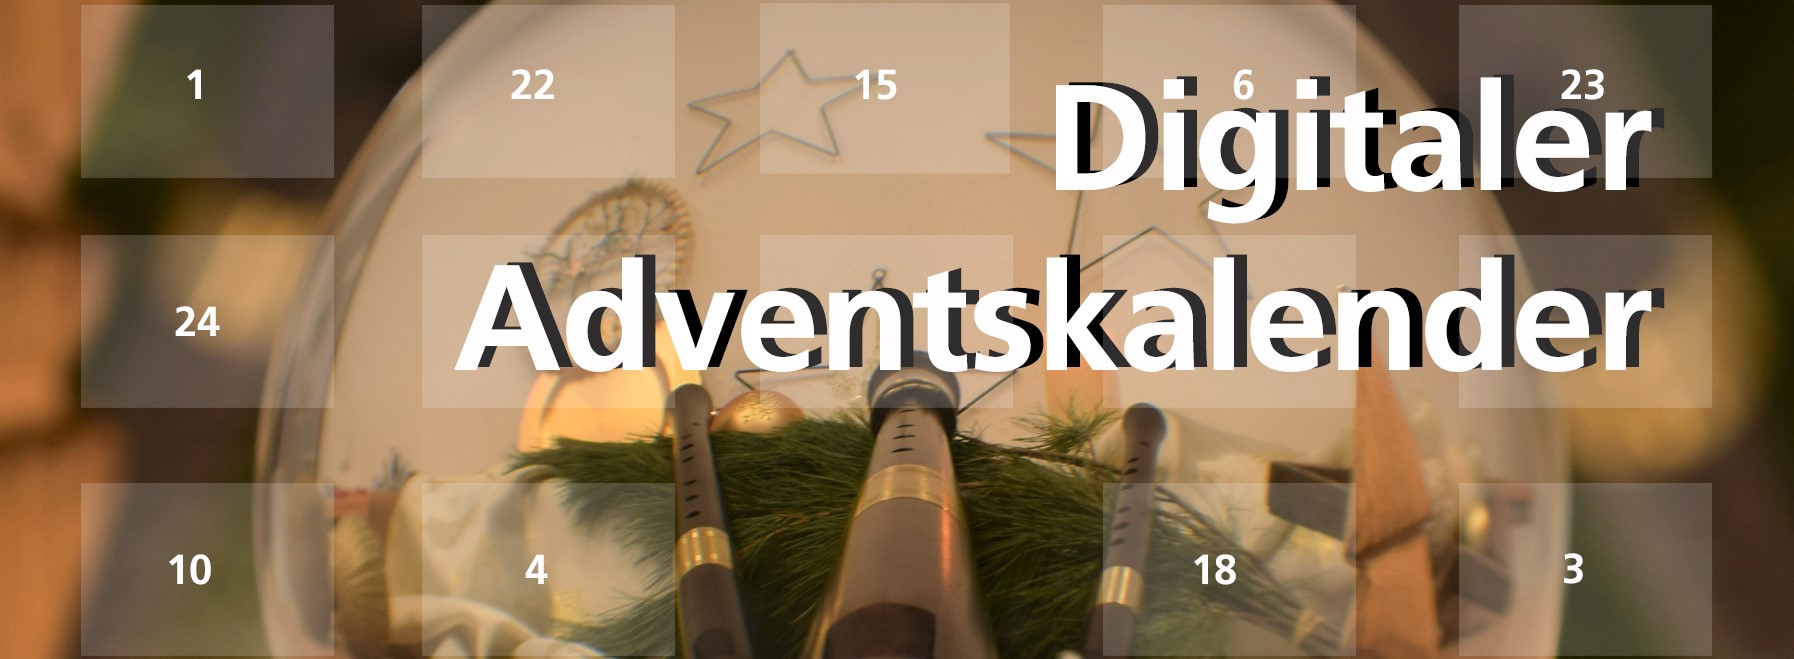 Eine weihnachtsliche Kugel mit Instrumenten und einer großen Schrift "Digitaler Adventskalender"